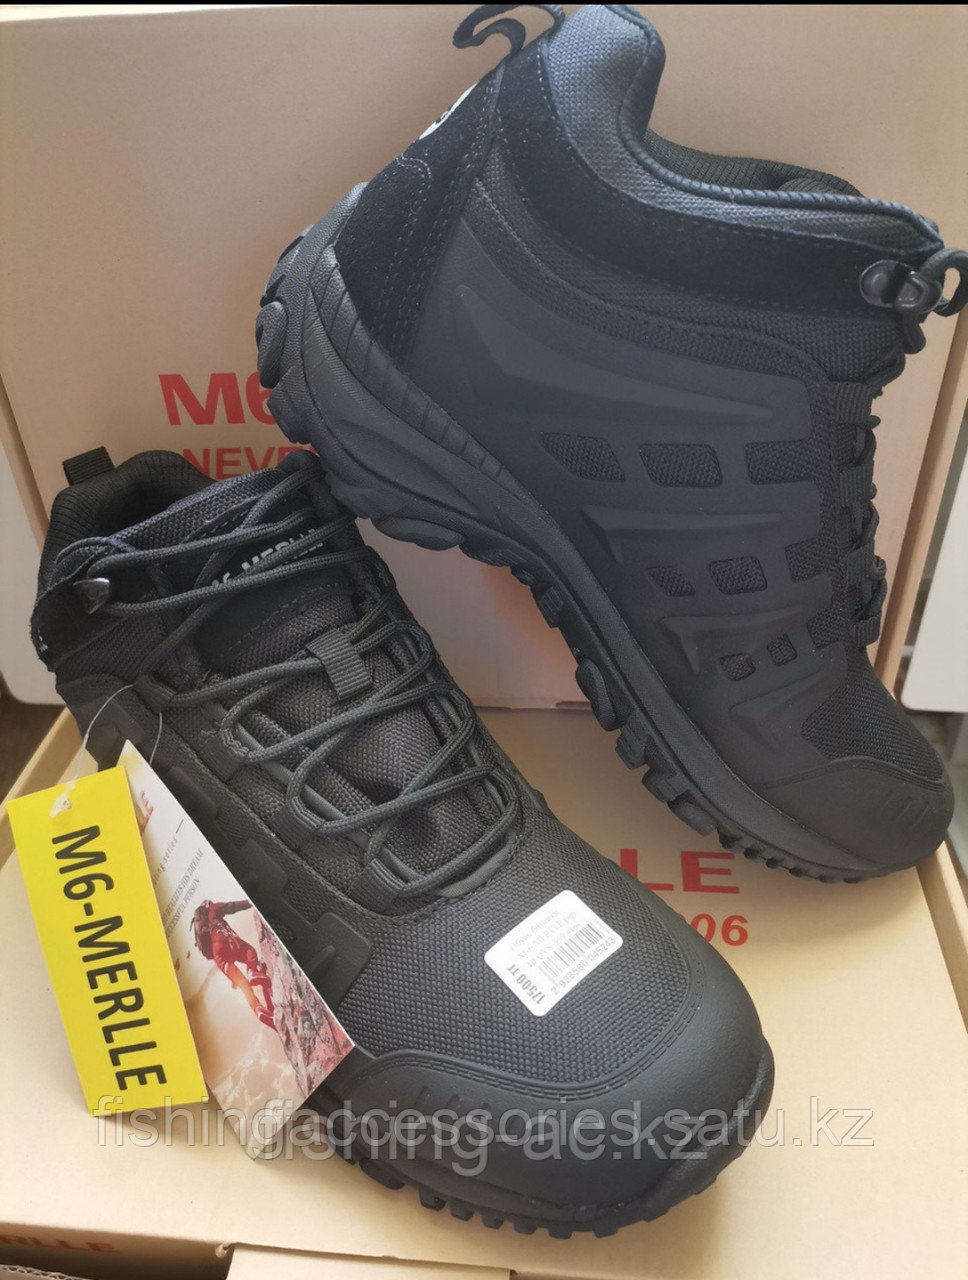 Обувь ботинки M-6 MERLLE р-р 42 QYS-999 черный 93658 Китай